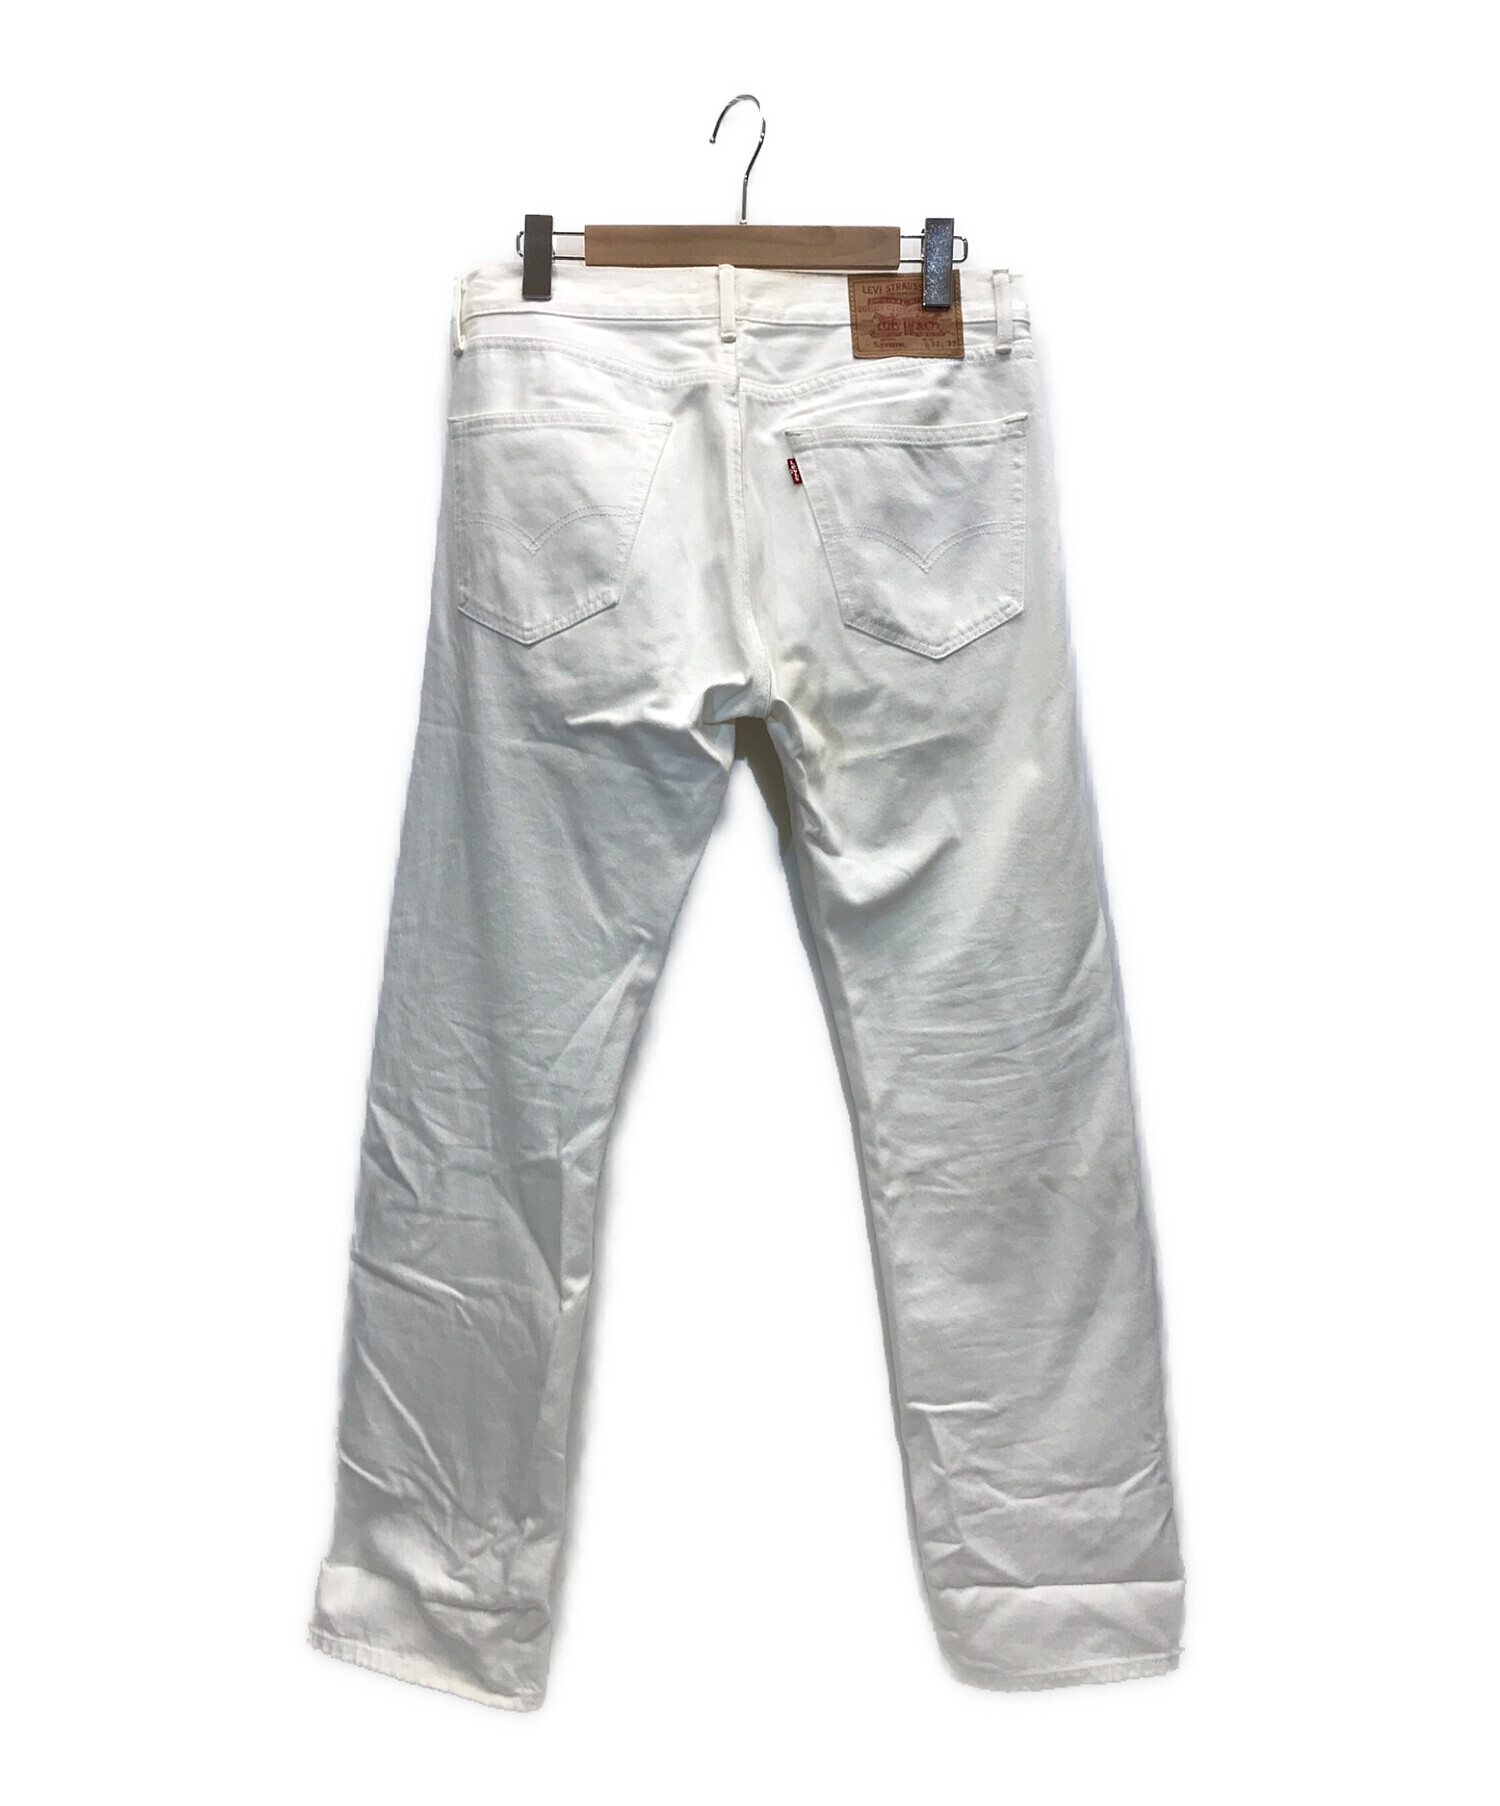 Supreme×LEVIS (シュプリーム×リーバイス) 17SS Washed 505 Jeans コラボウォッシュド505デニムパンツ ホワイト  サイズ:32